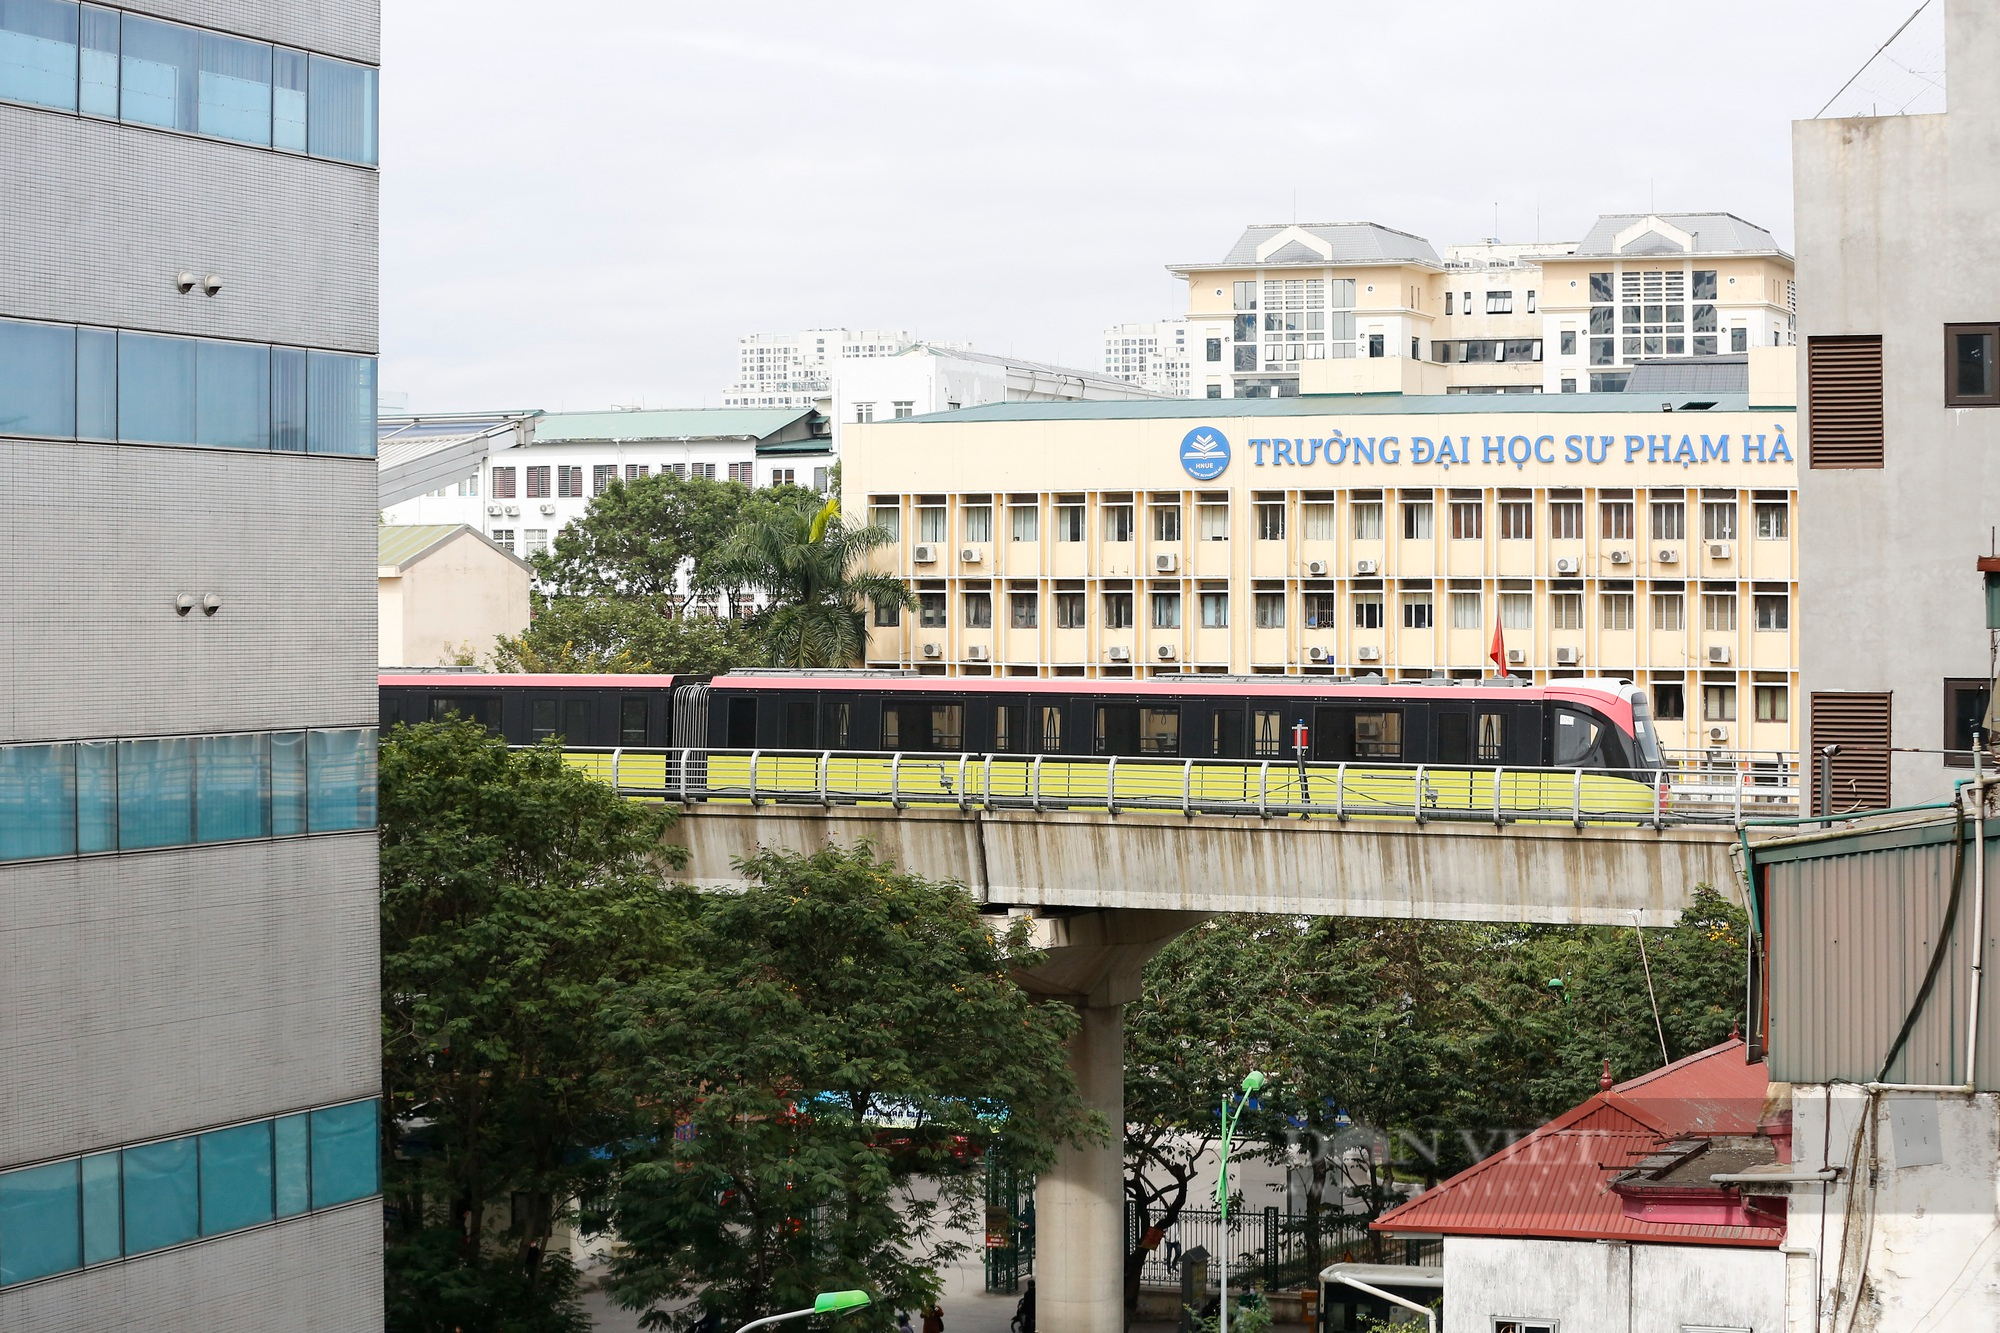 Tuyến đường sắt đô thị 34.532 tỷ đồng tại Hà Nội chạy thử 8 đoàn tàu để đo hiệu suất - Ảnh 5.